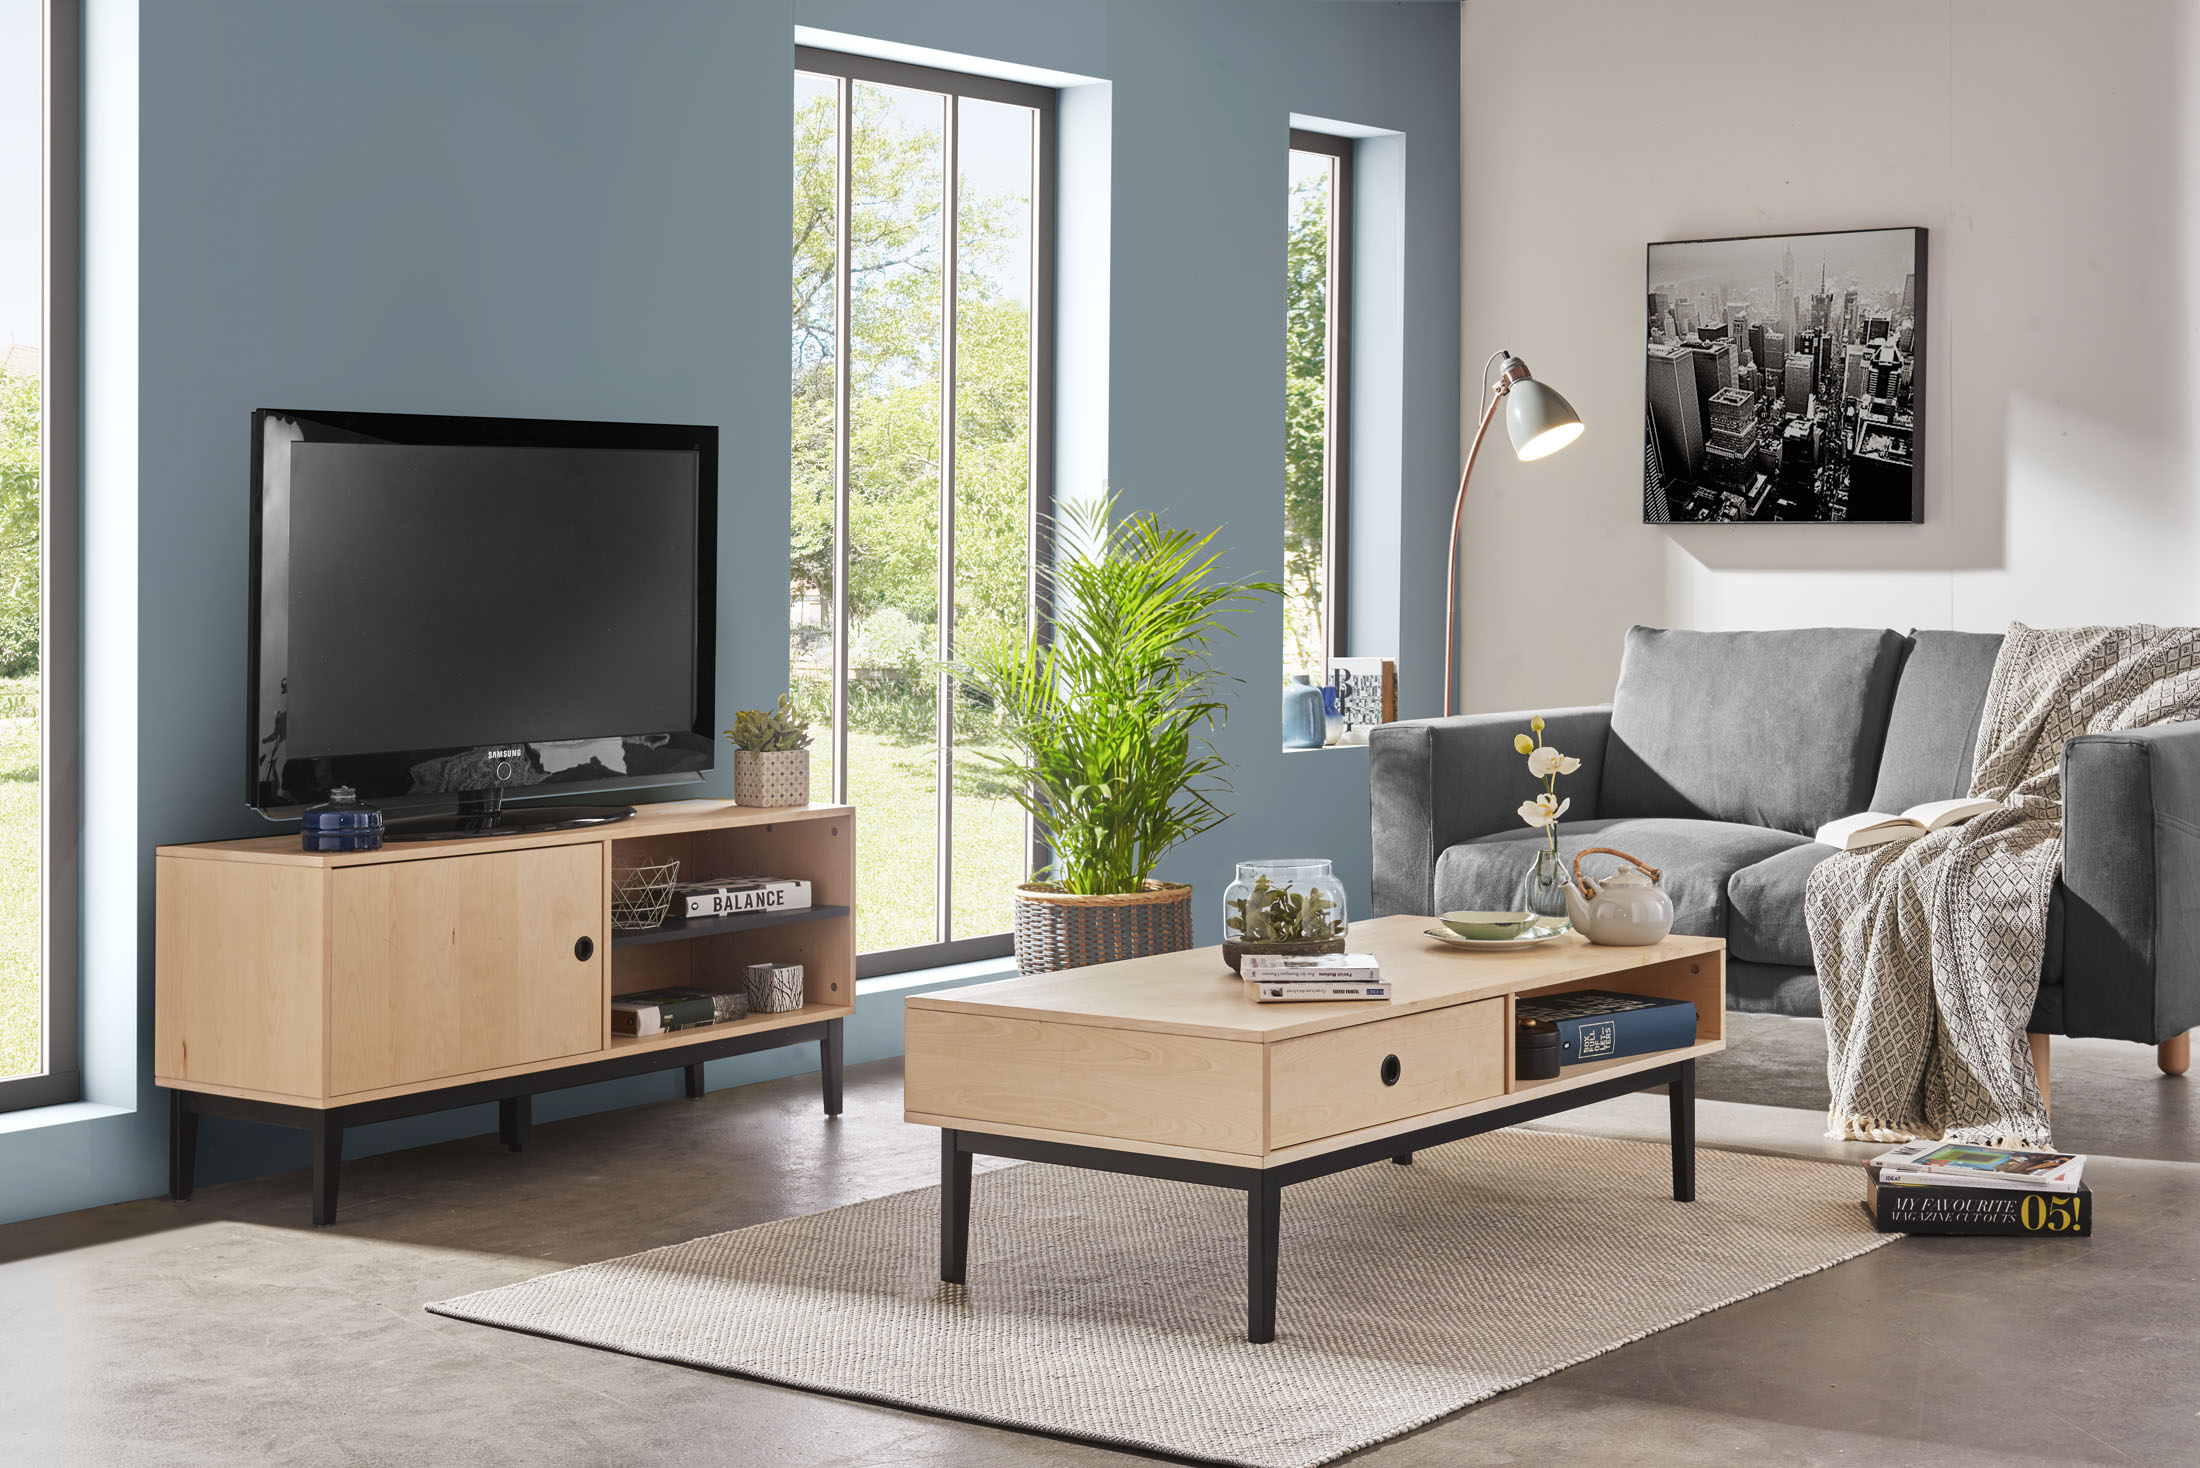 Ambiance studio - photo d'un salon avec table basse et meuble télé